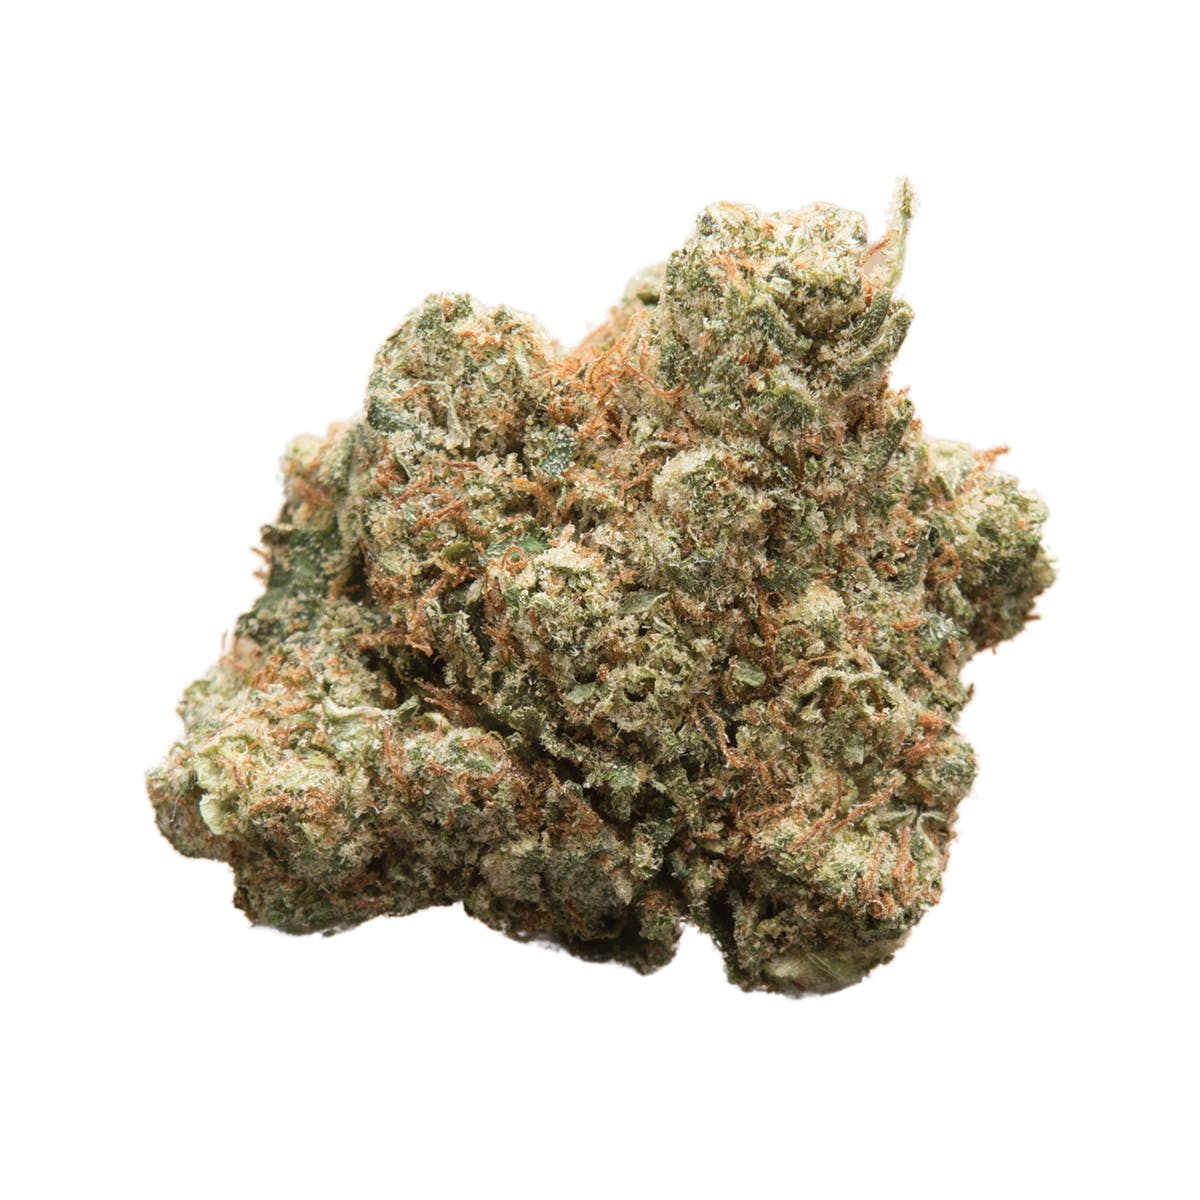 marijuana-dispensaries-hcma-nc-co-op-2c-inc-in-sun-valley-dizzy-og